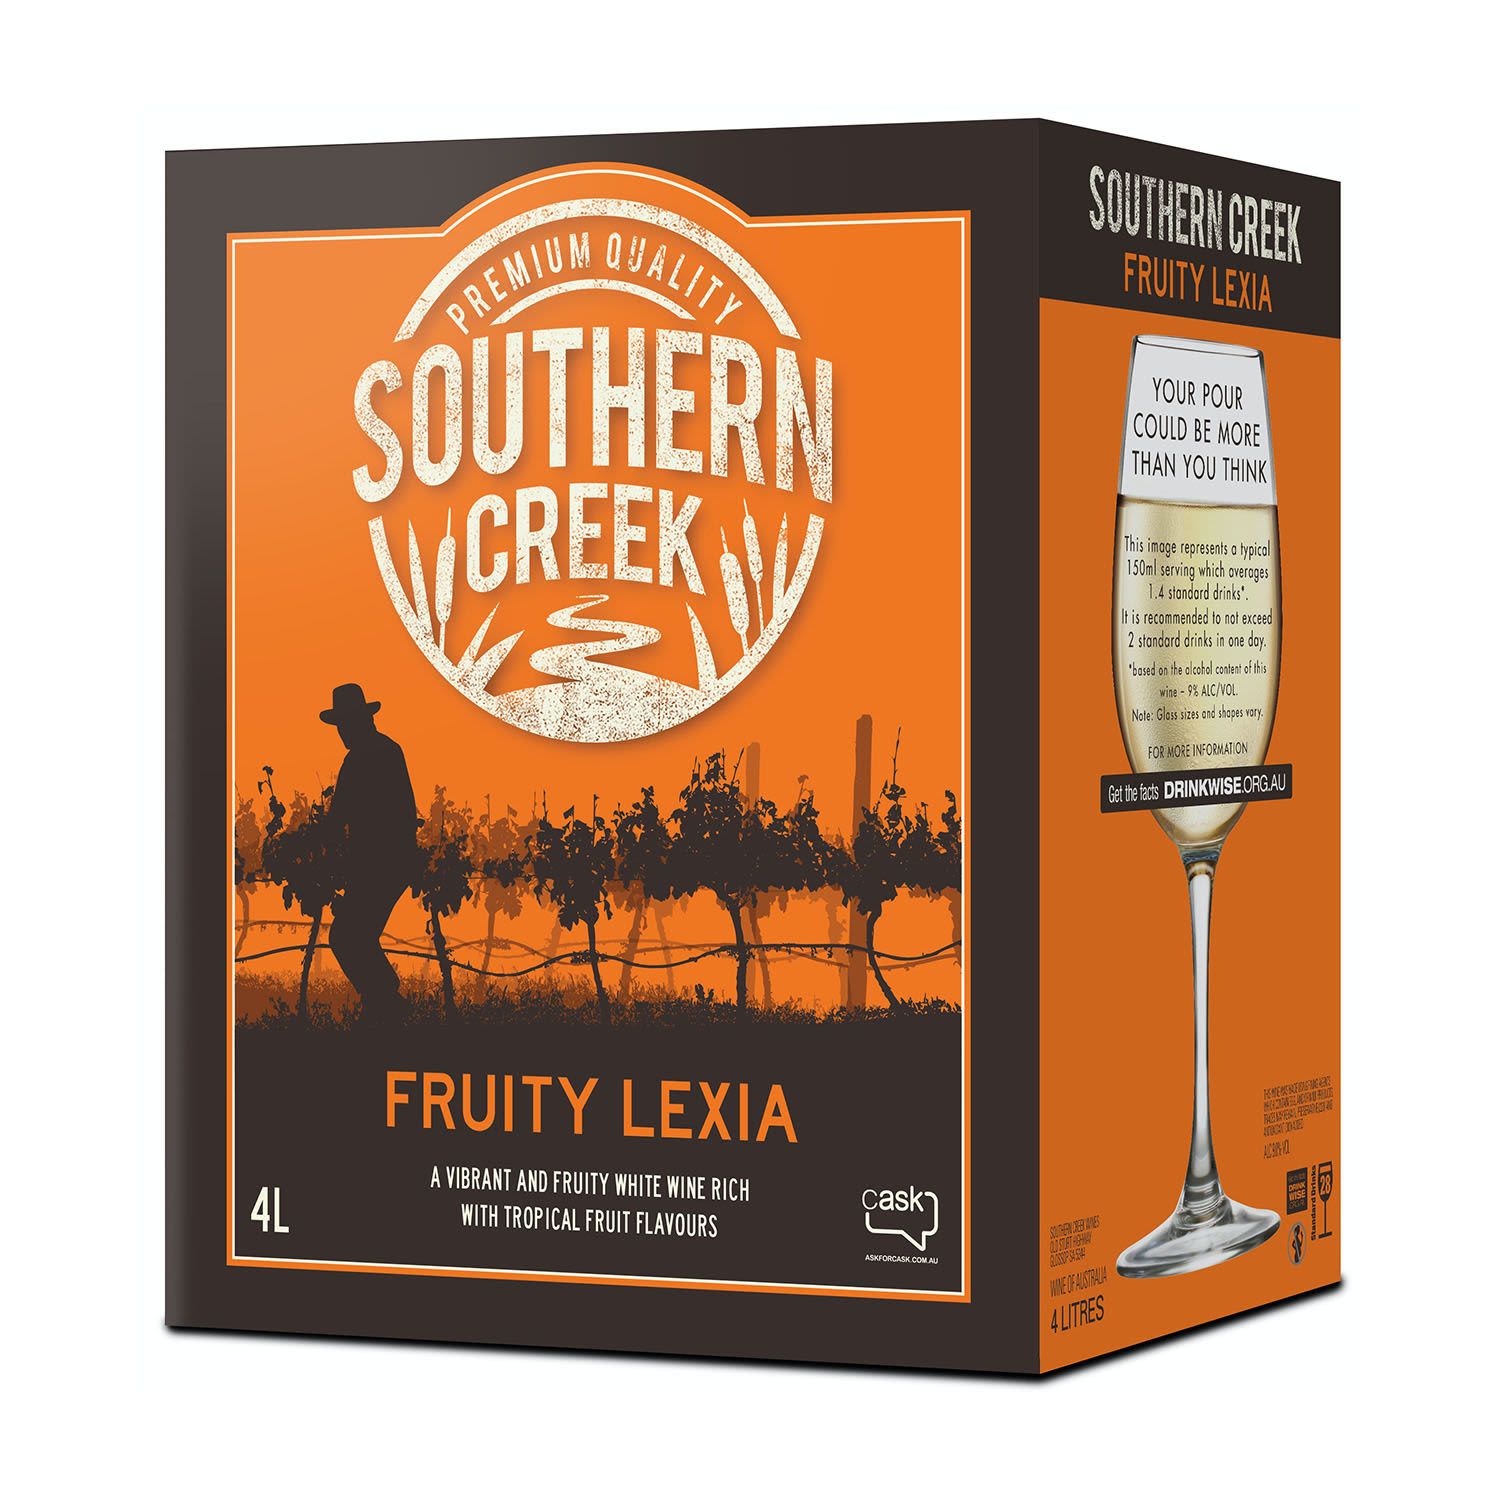 Southern Creek Fruity Lexia Cask 4L